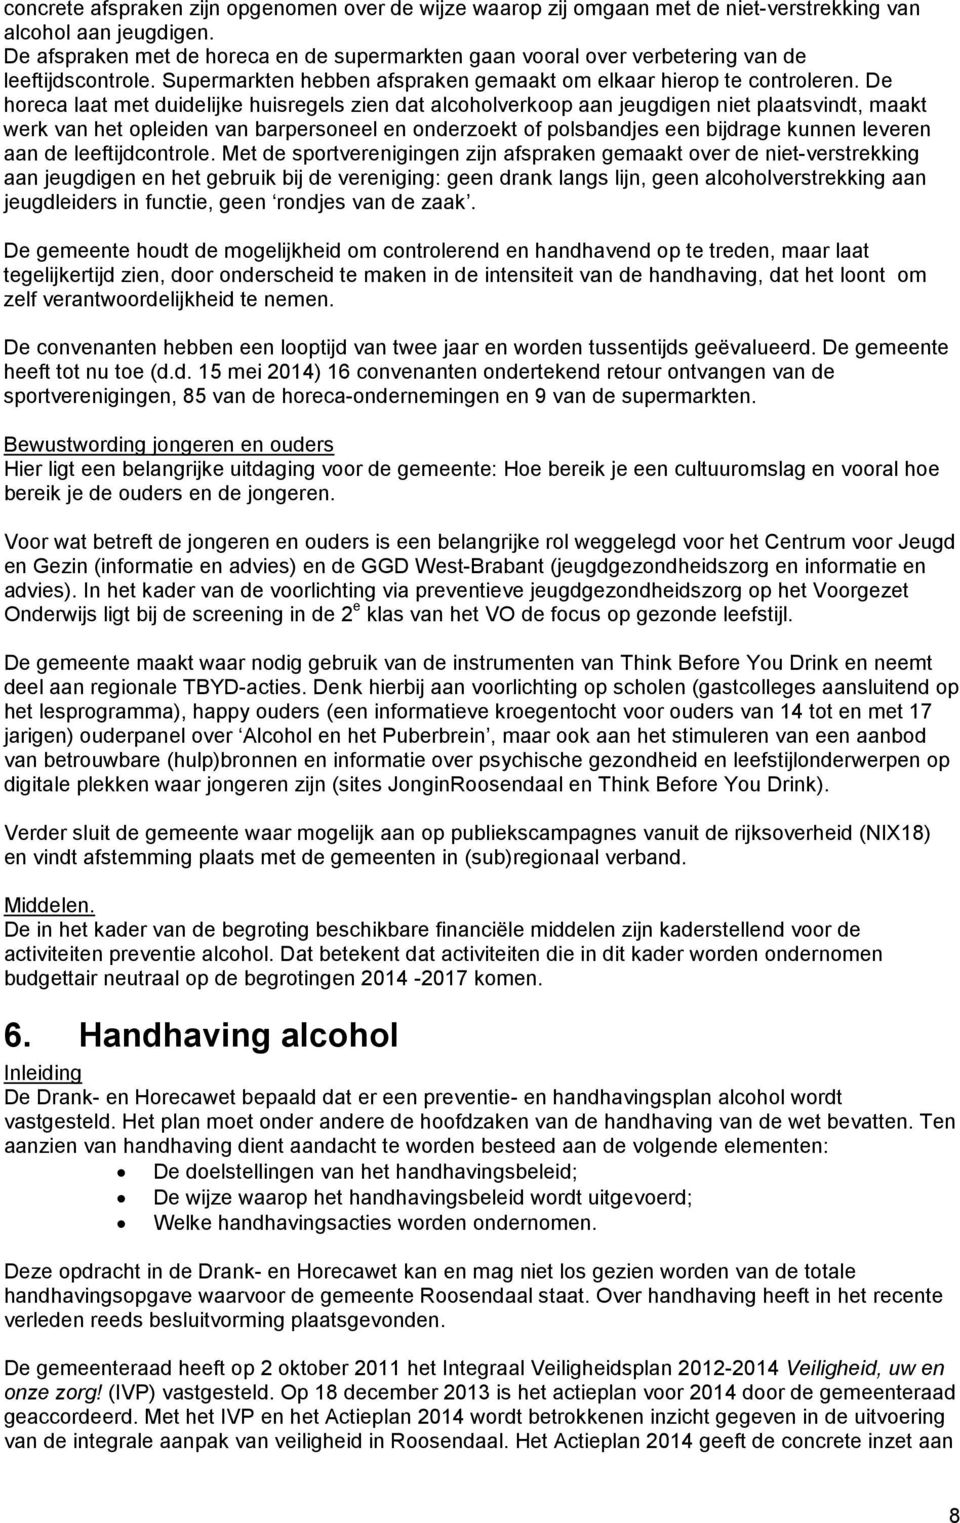 De horeca laat met duidelijke huisregels zien dat alcoholverkoop aan jeugdigen niet plaatsvindt, maakt werk van het opleiden van barpersoneel en onderzoekt of polsbandjes een bijdrage kunnen leveren